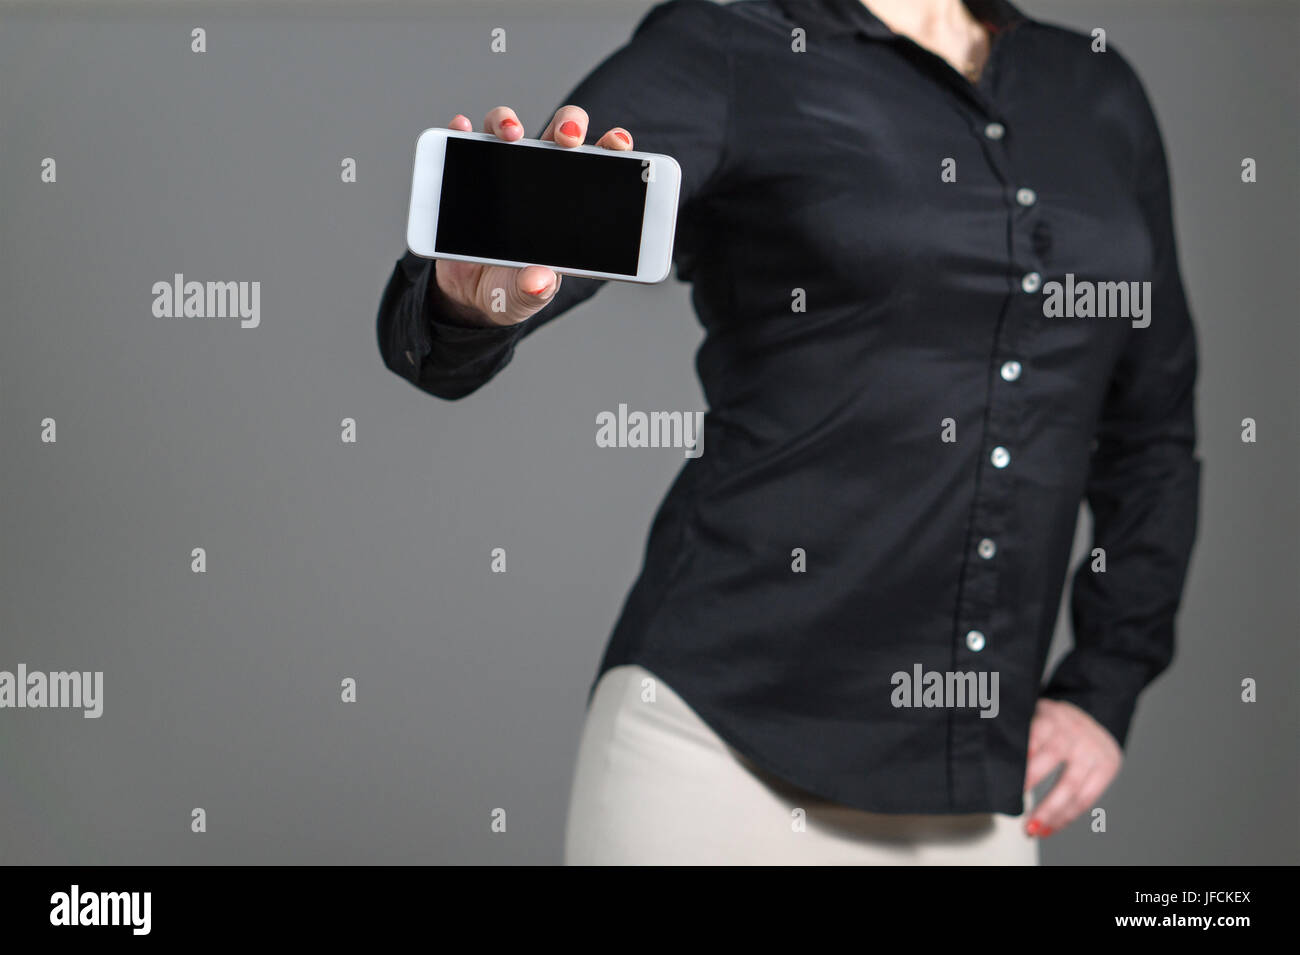 Business-Frau präsentieren eine mobile Anwendung oder ein Foto. Mädchen halten Smartphone mit dynamischen Pose und schwarzen Hemd mit Kragen. Leerer Bildschirm. Stockfoto